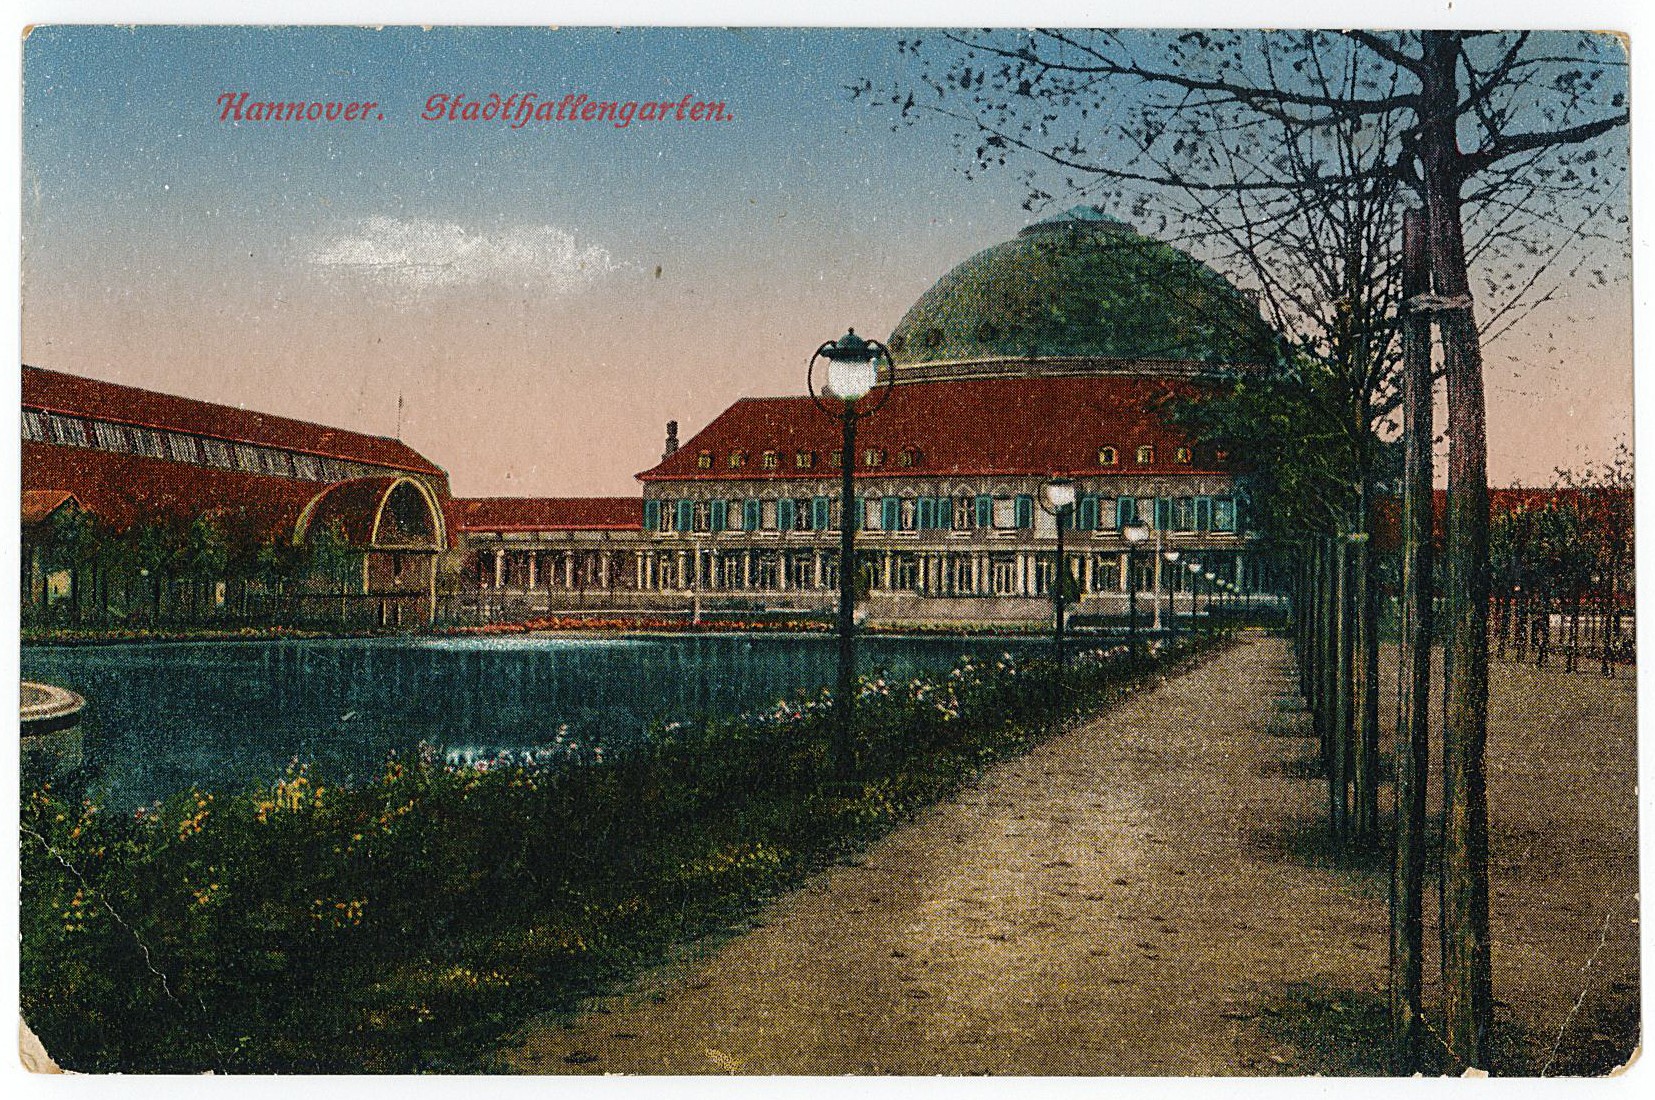 Postkarte von Erich Otto an seinen Vater Hermann Otto, 23.09.1917 (Museum Wolmirstedt RR-F)